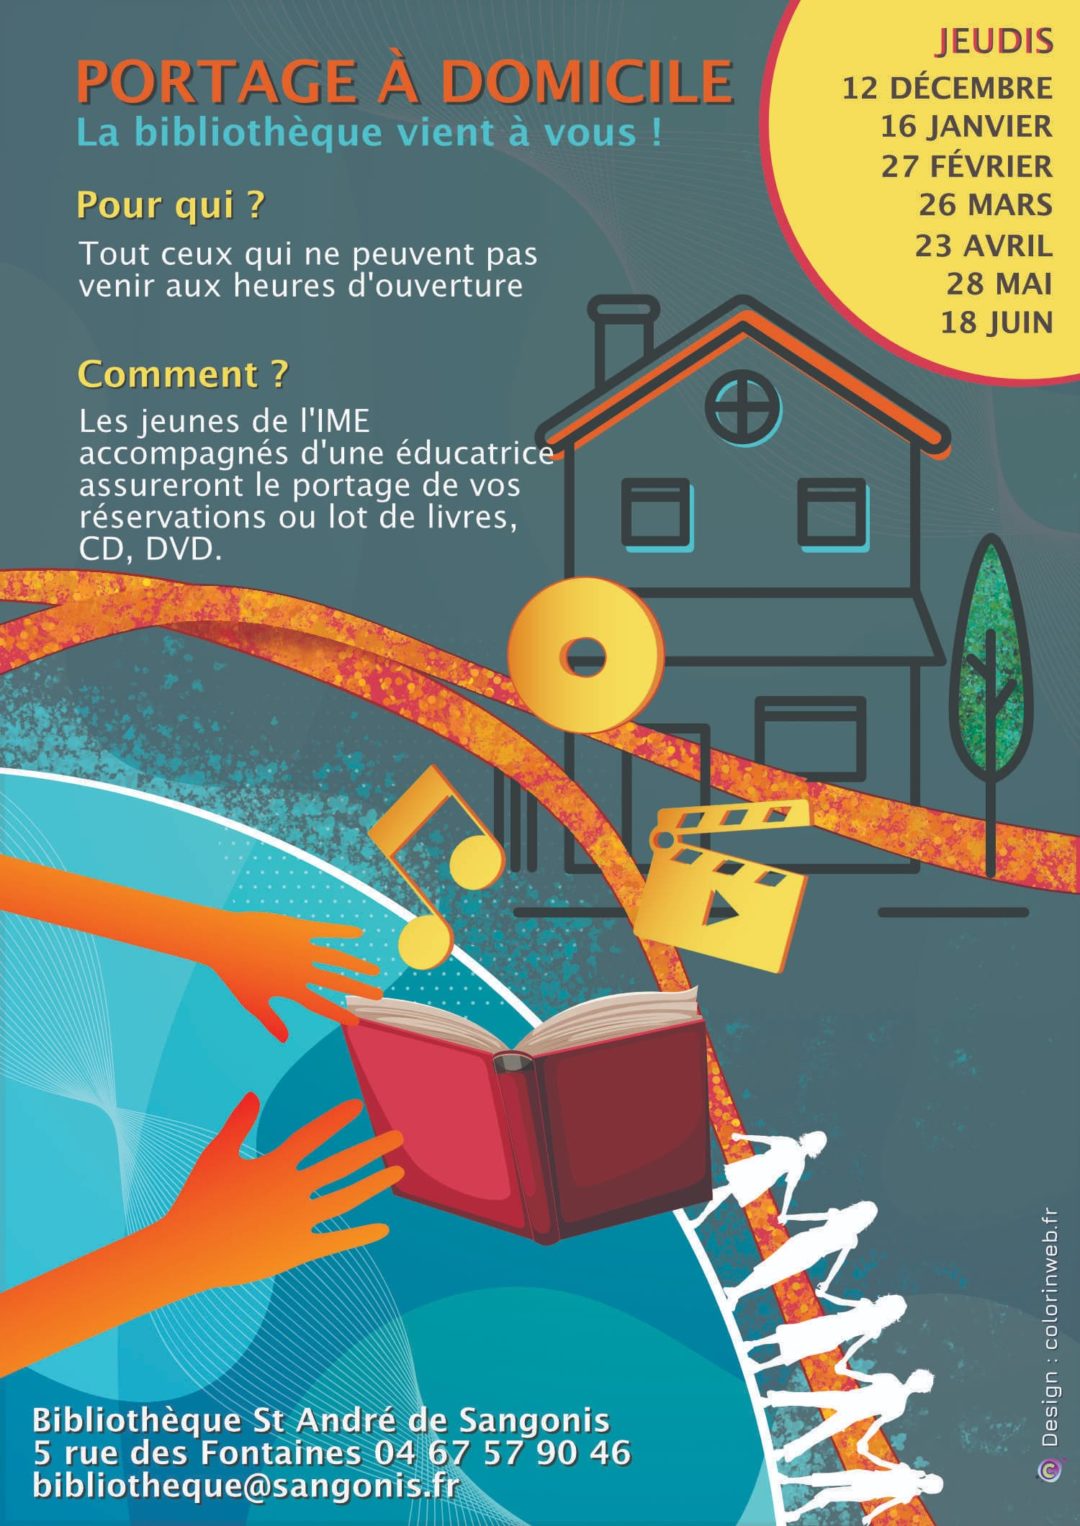 (Français) Affiche pour bibliothèque